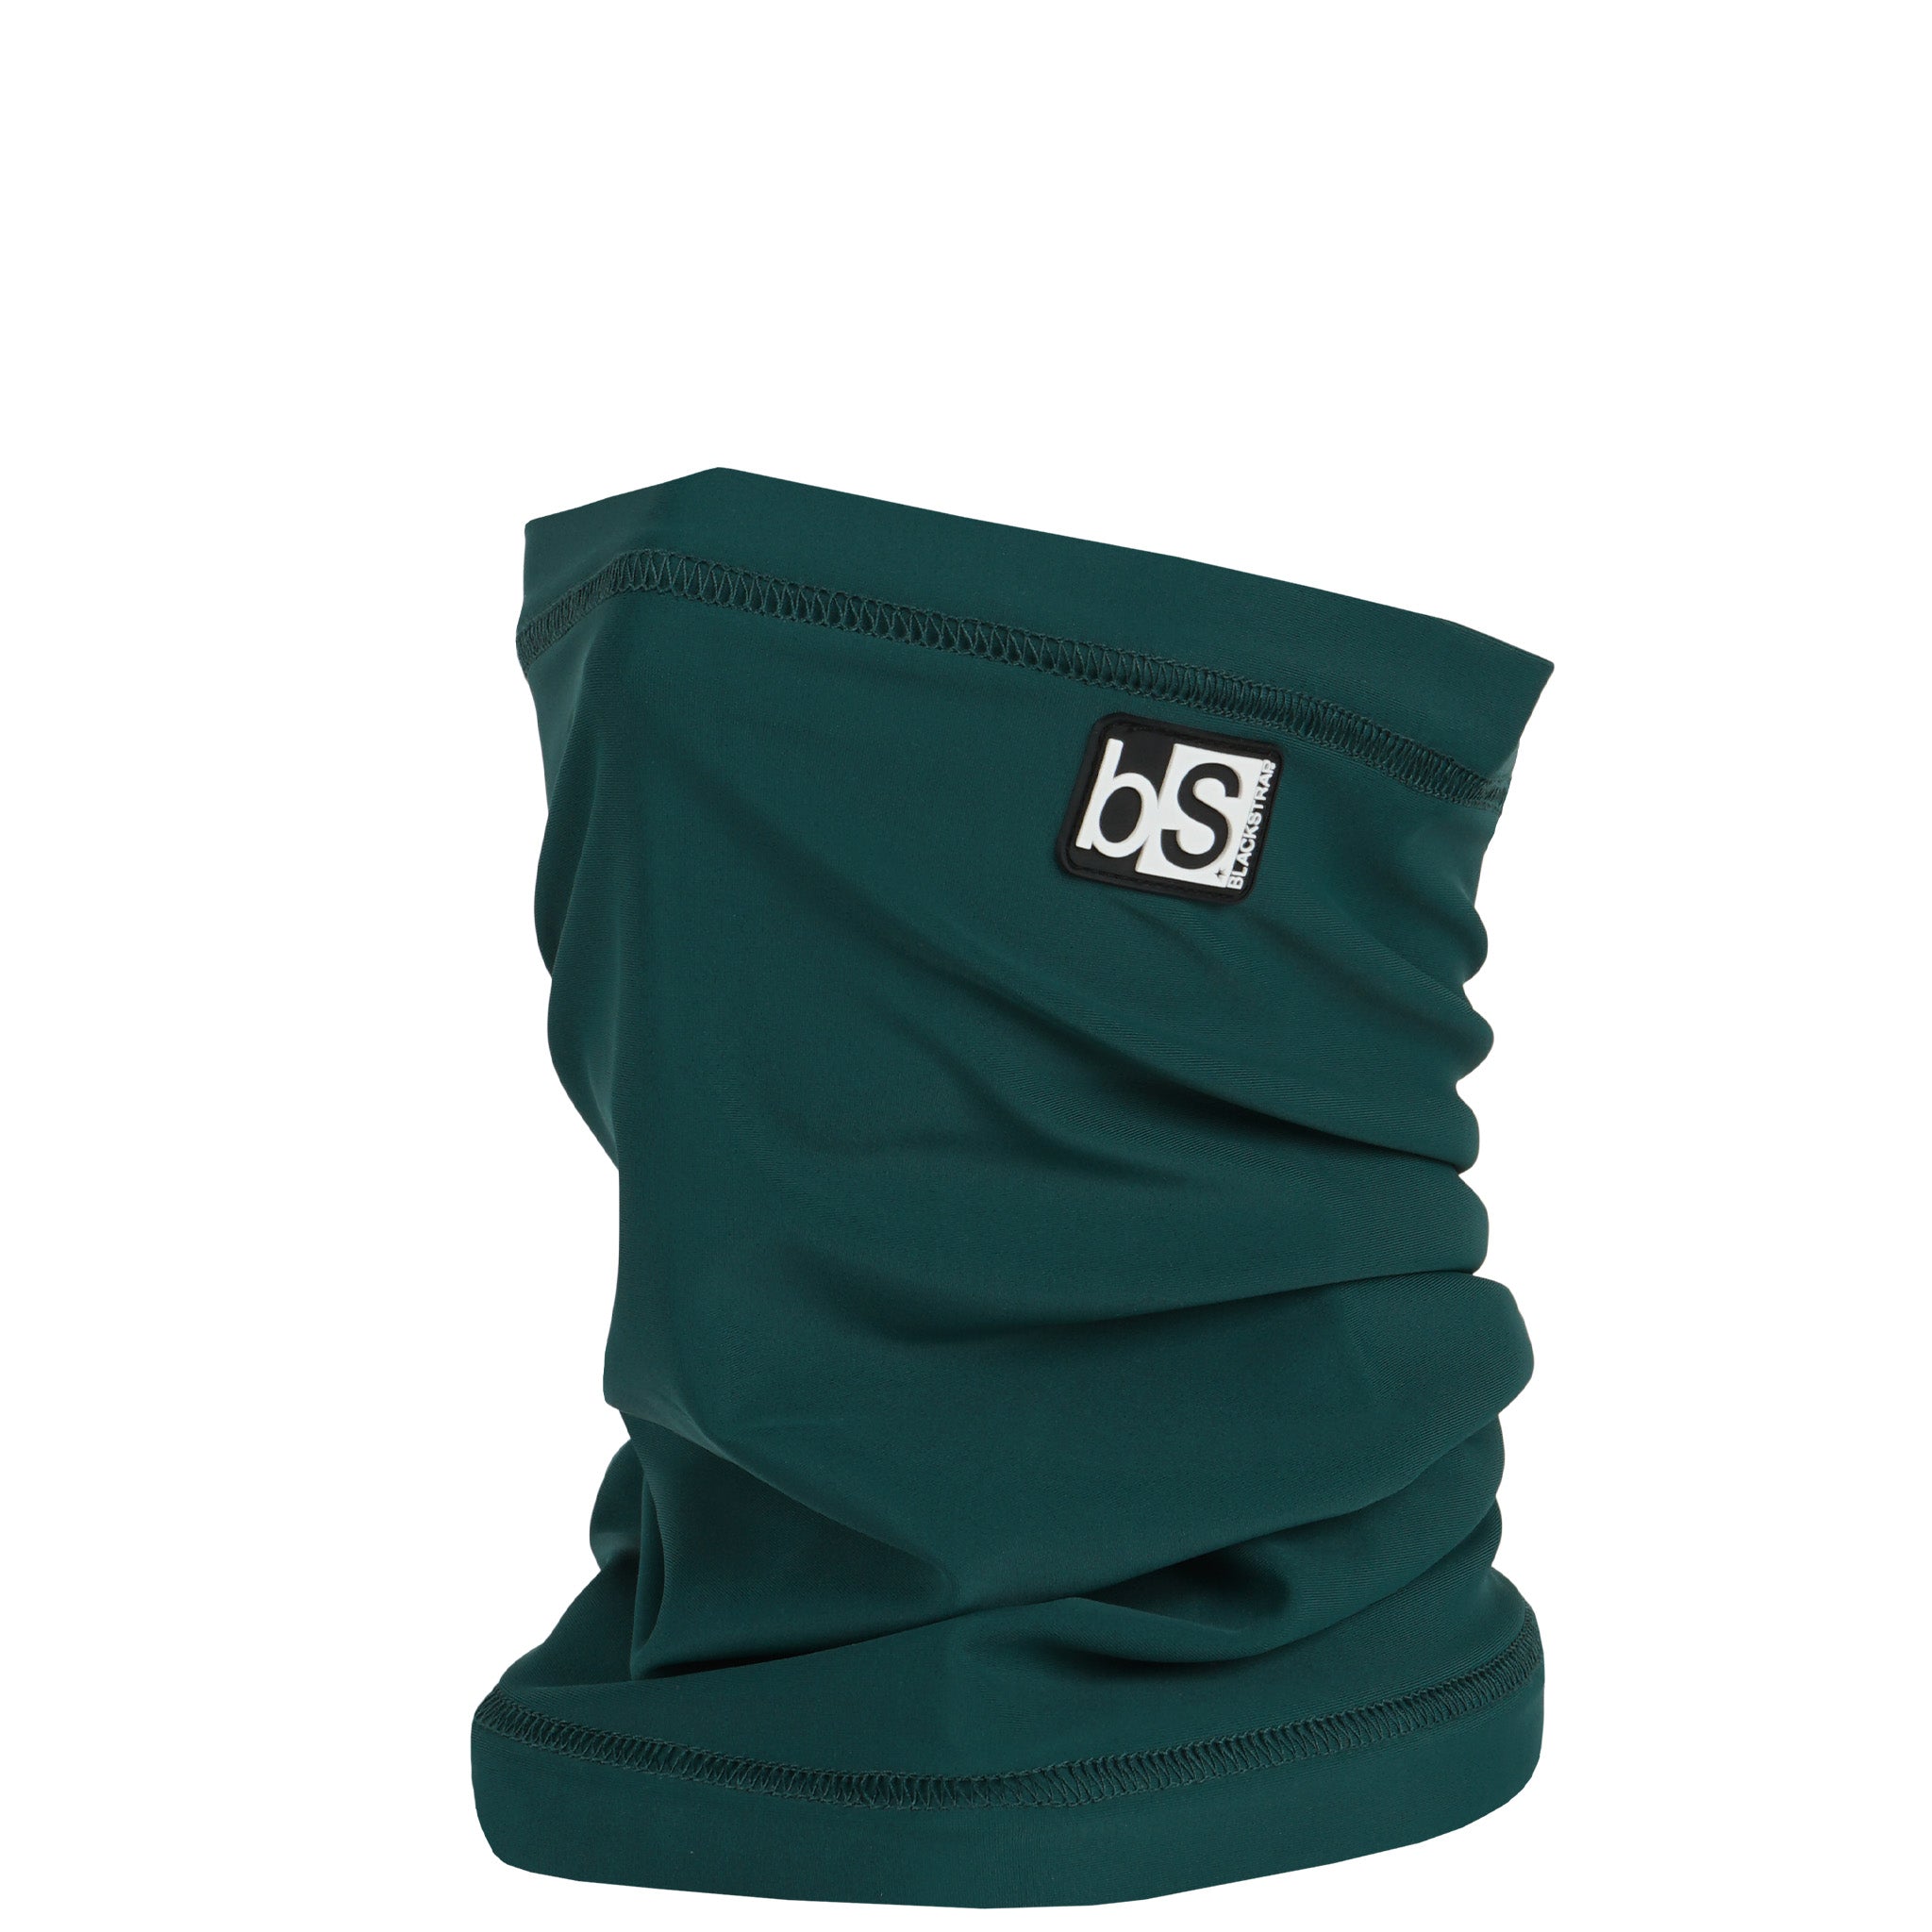 Dual Layer Tube Neck Warmer | Solids Blackstrap Emerald  